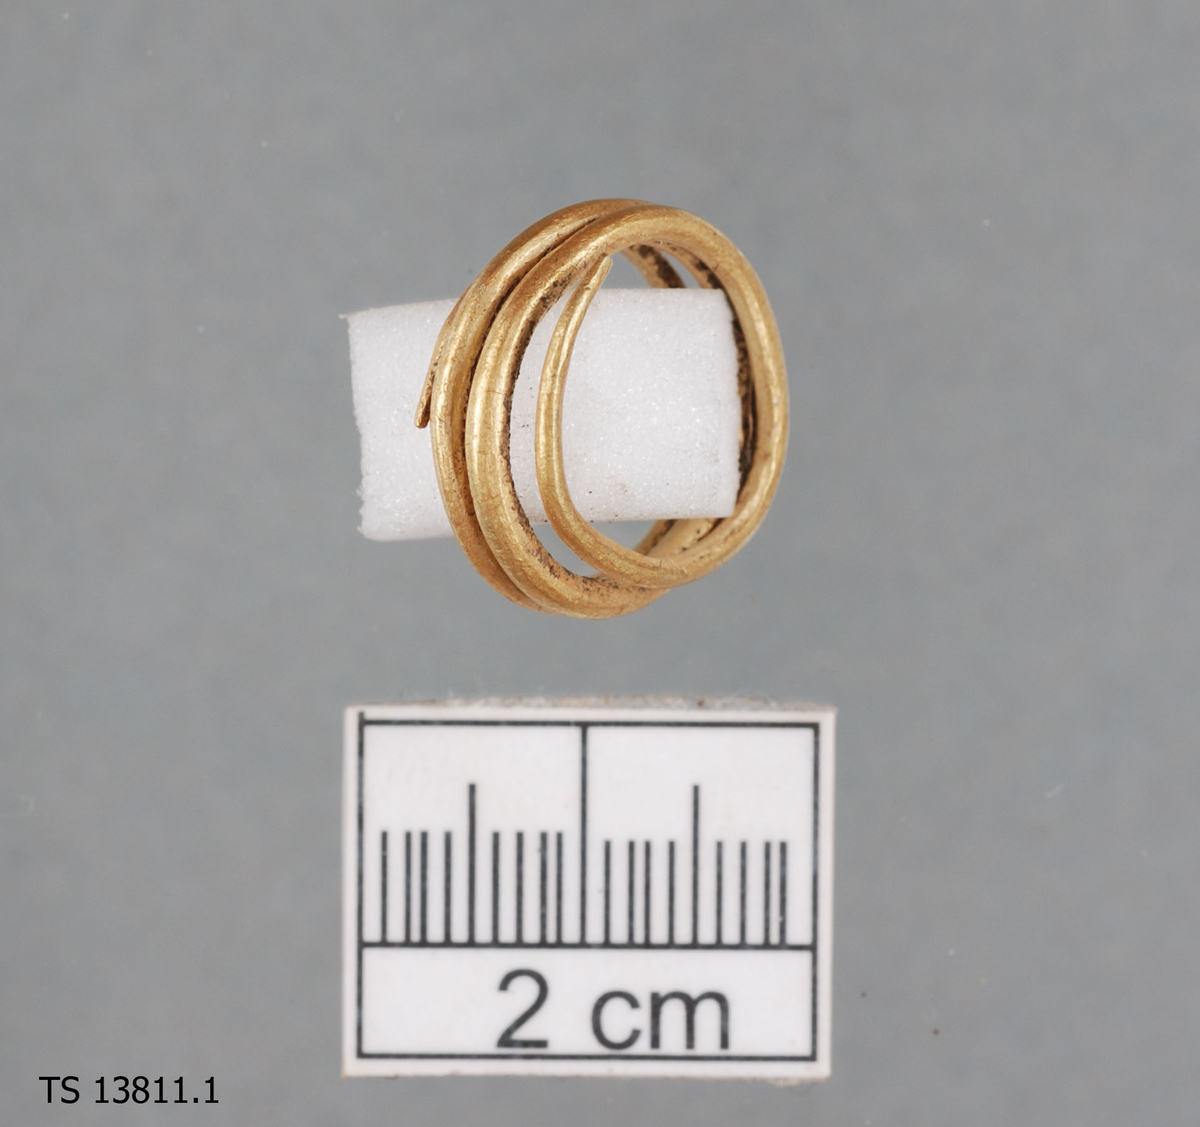 Betalingsring av gull, 1 stk., trolig fra eldre jernalder, likner Rygh 1885 figur 183. Ringen har tre hele omdreininger, som delvis ligger kant i kant. Gulltråden har et tilnærmet rundt tverrsnitt. Ringen er tykkest midt på spiralen og avsmalner i hver ende. Endene er
spisse. Ringen er 1,8 cm i diameter, største høyde 0,7 cm og største tykkelse på tråden er 0,15 cm. Vekt 3,94 gram. 